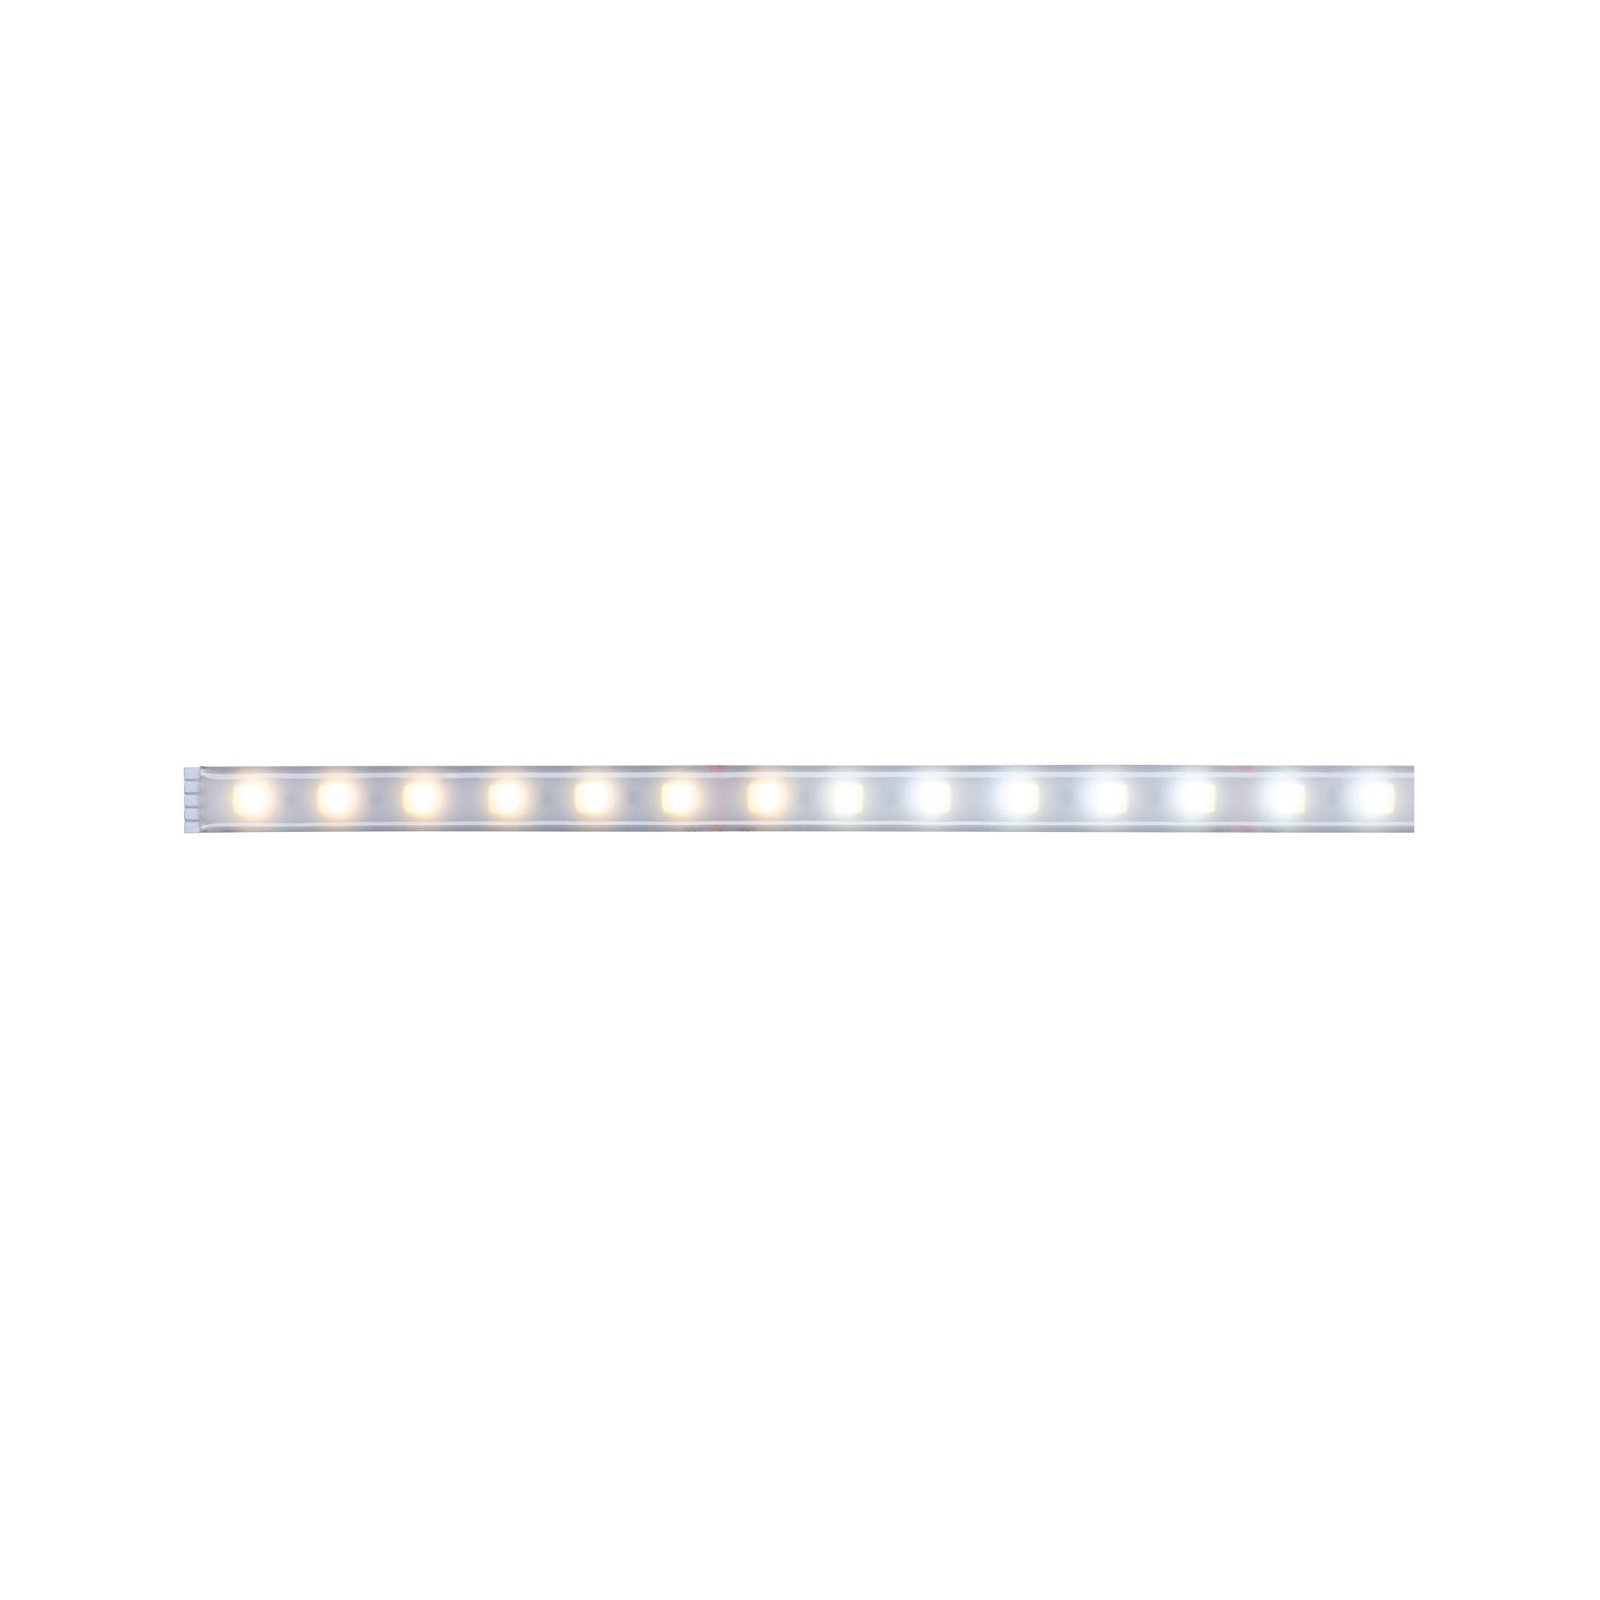 MaxLED 500 LED Strip Tunable White Einzelstripe 1m beschichtet IP44 7W 470lm/m Tunable White